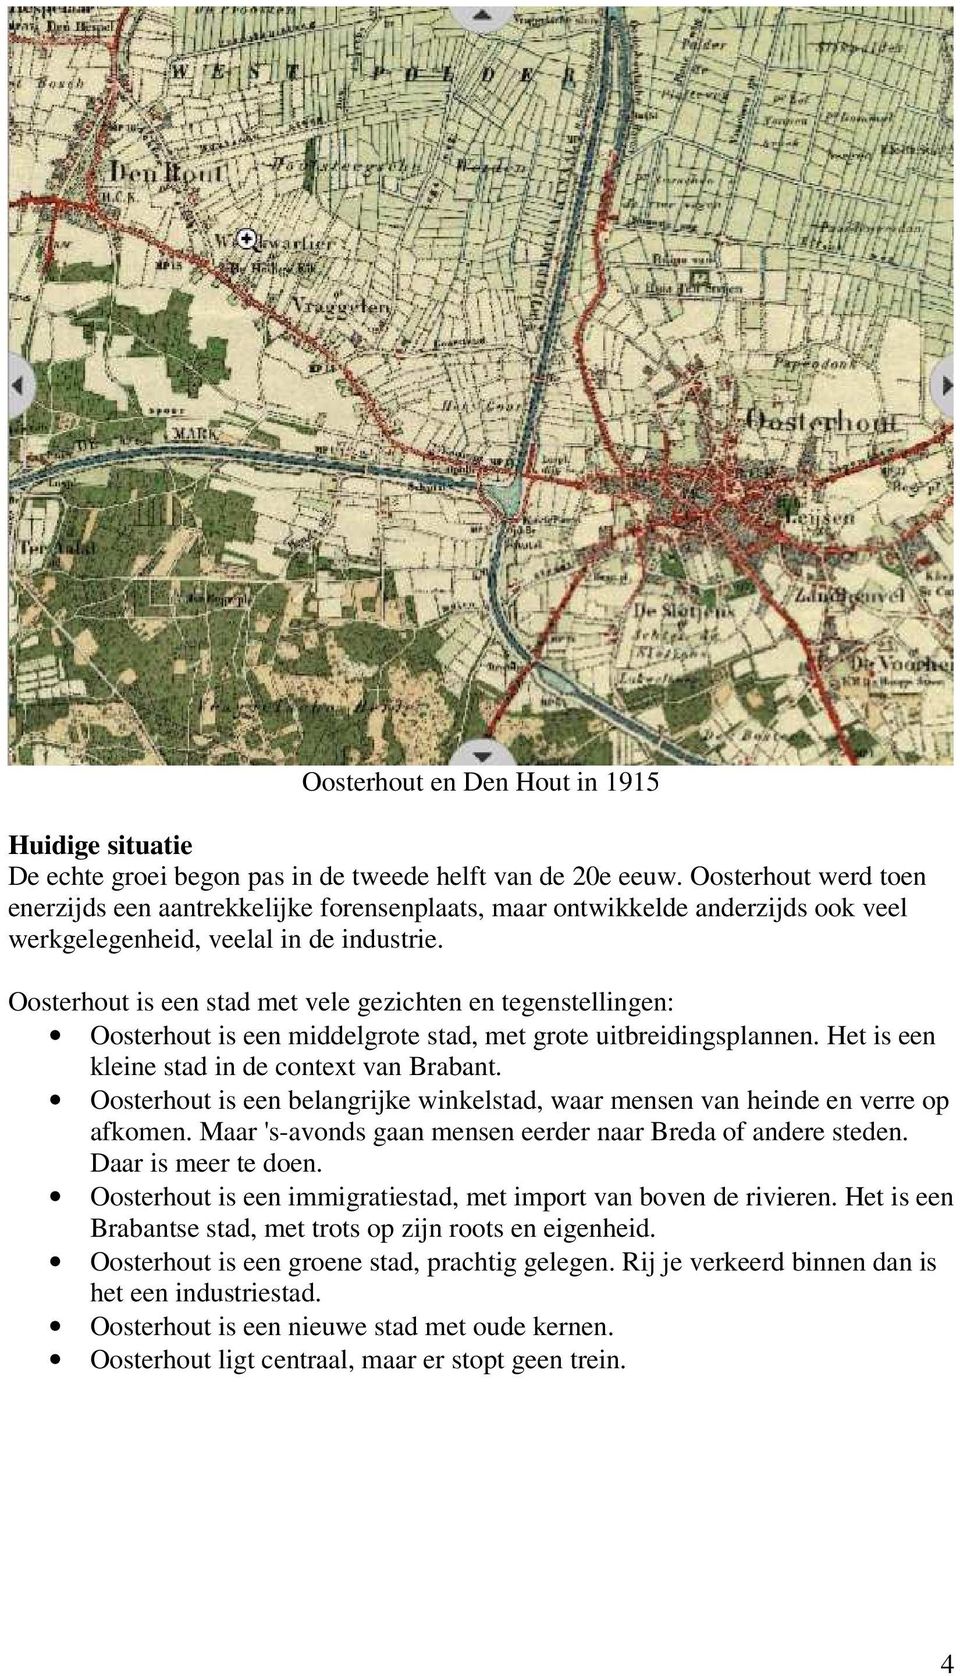 Oosterhout is een stad met vele gezichten en tegenstellingen: Oosterhout is een middelgrote stad, met grote uitbreidingsplannen. Het is een kleine stad in de context van Brabant.